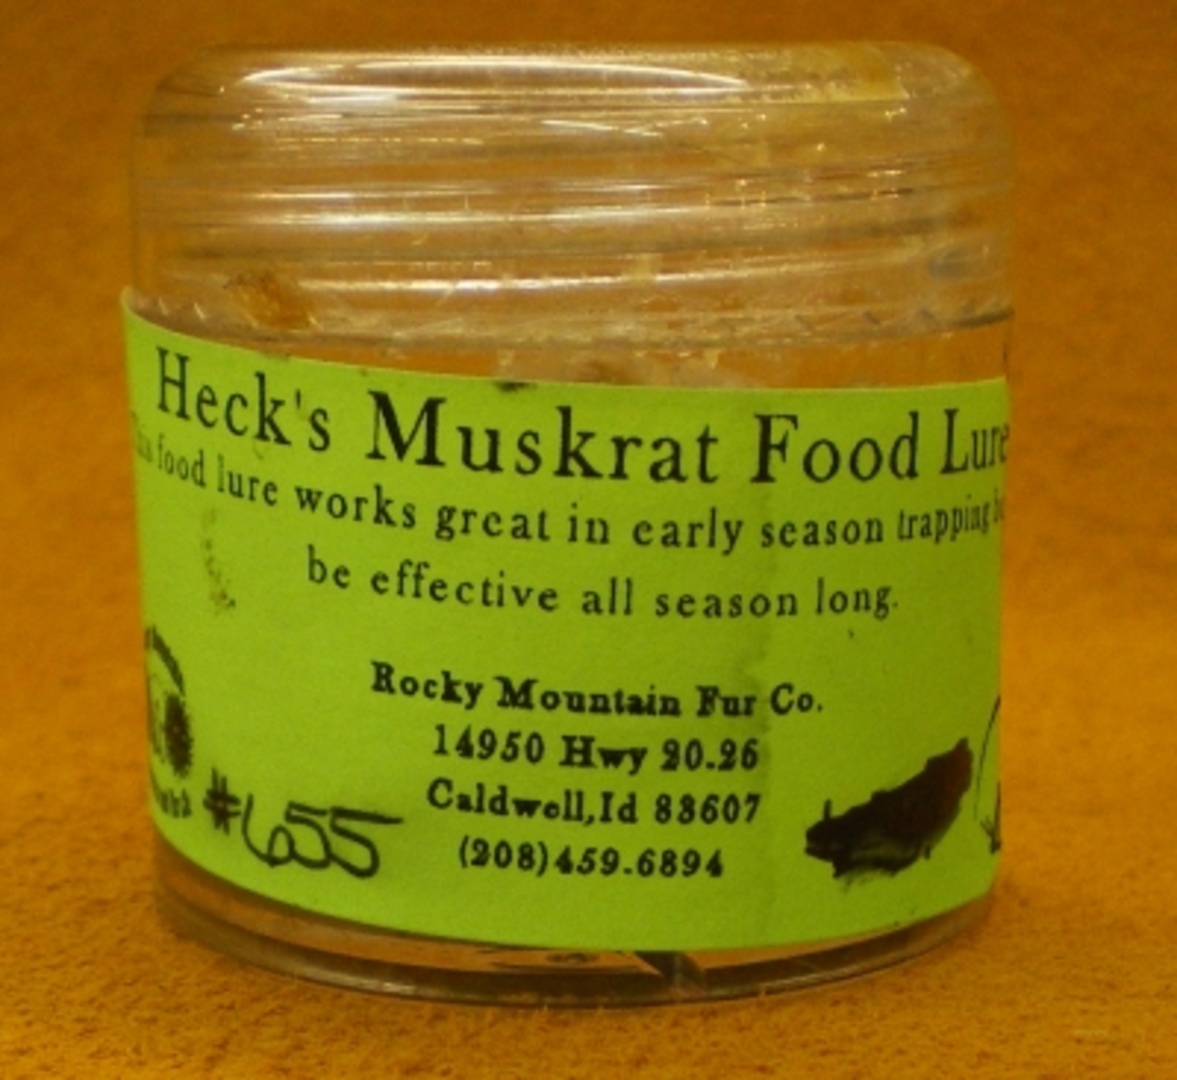 Heck's Muskrat Food Lure